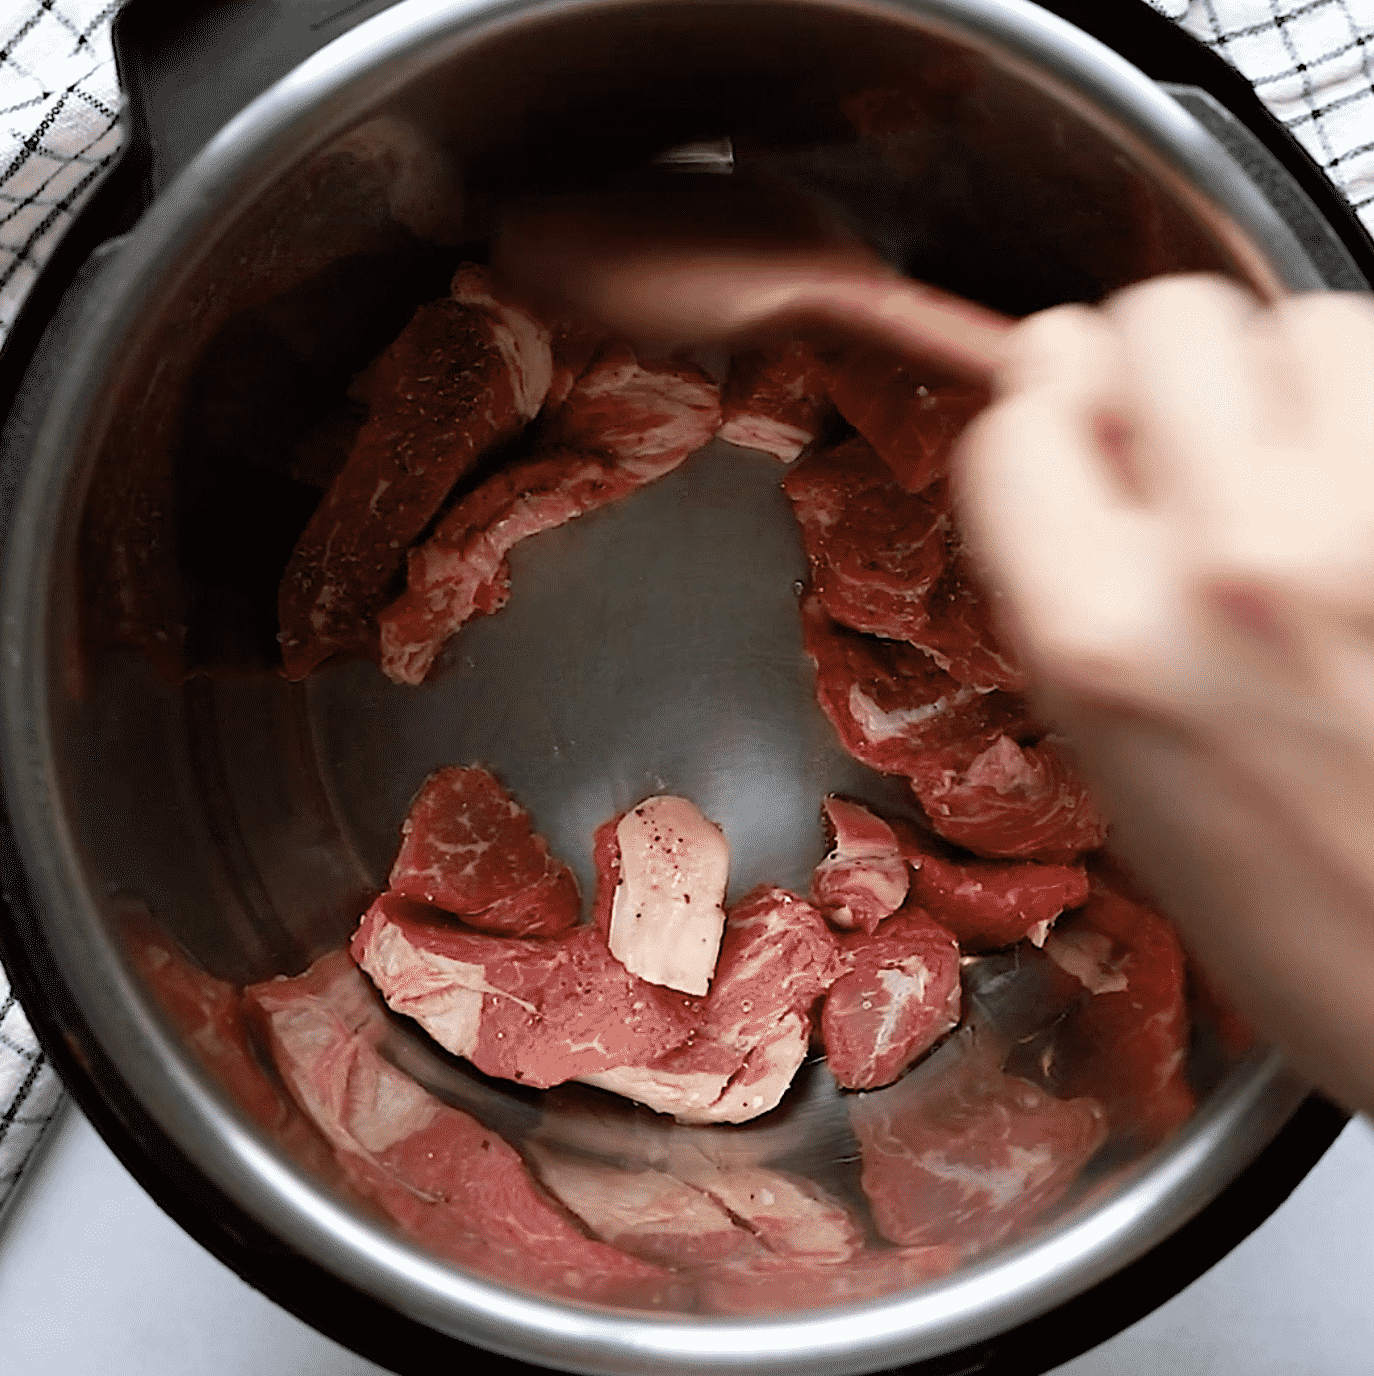 https://www.primaverakitchen.com/wp-content/uploads/2021/02/Instant-Pot-sirloin-steak1.png